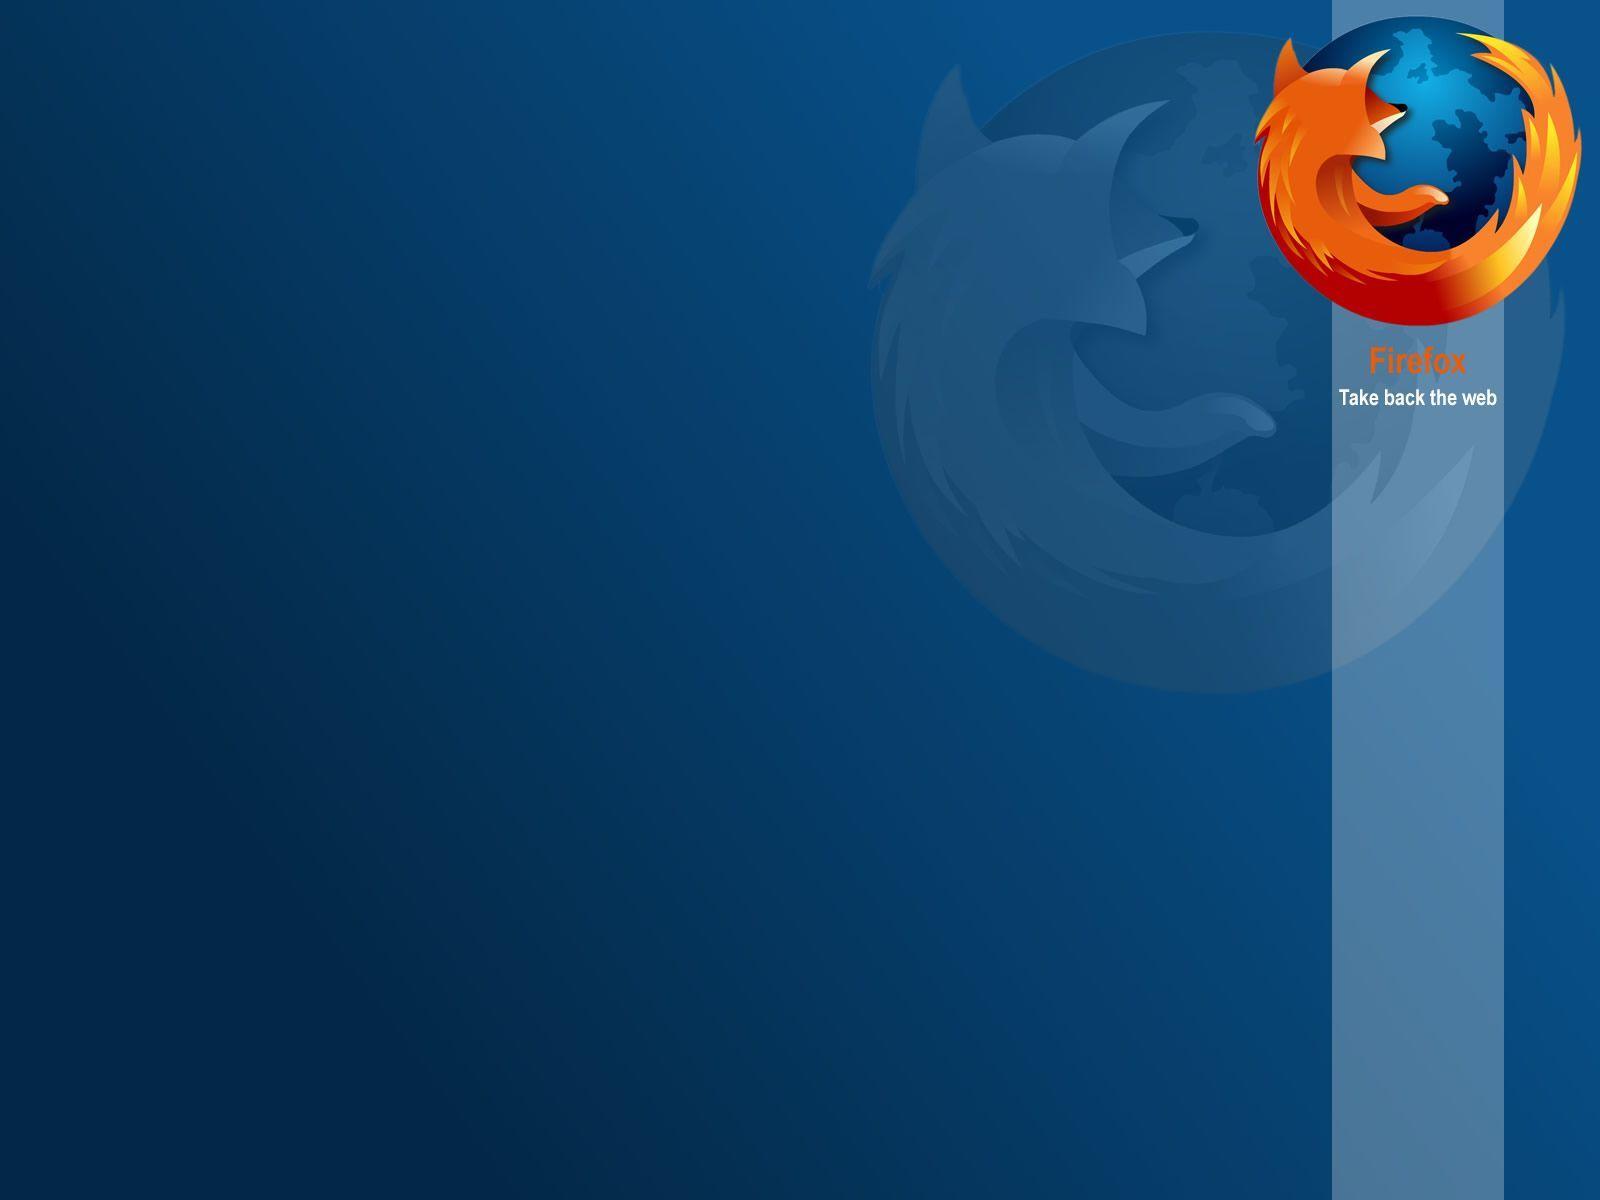 New Firefox Wallpaper Media Minute